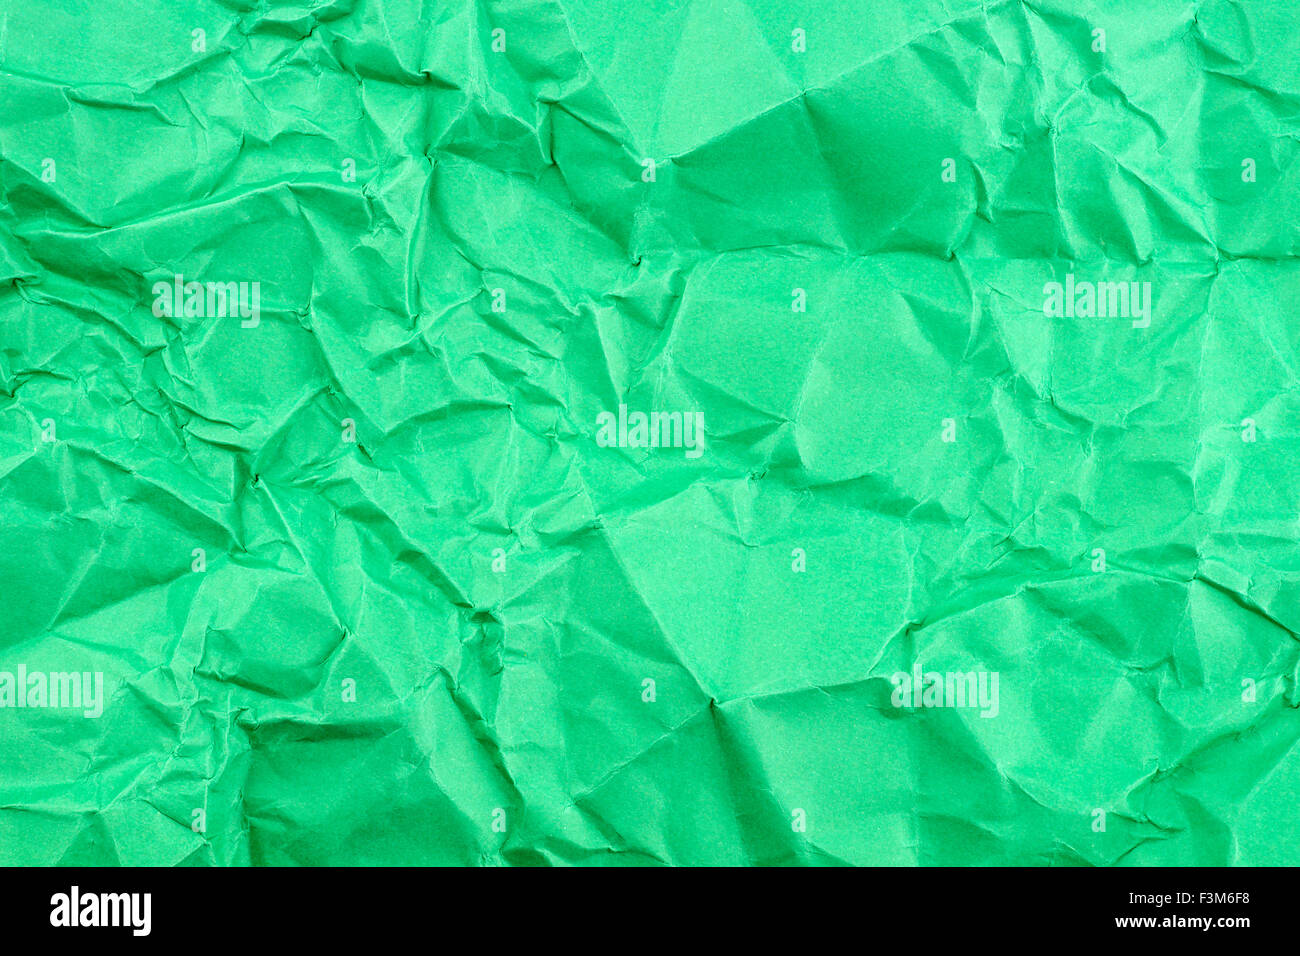 Textura de fondo verde brillante del papel doblado Foto de stock